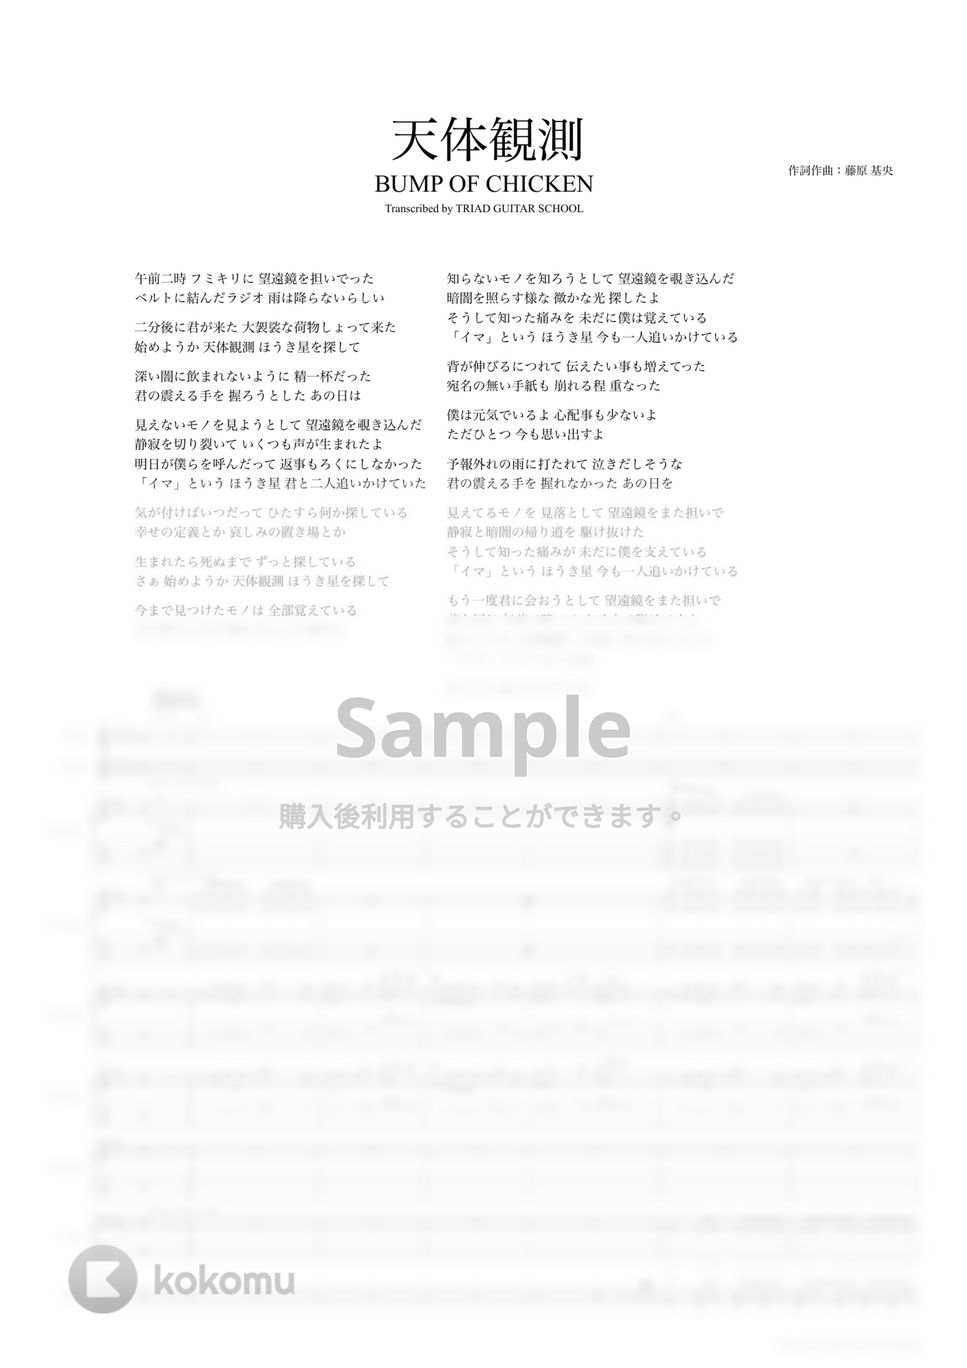 BUMP OF CHICKEN - 天体観測 (バンドスコア) by TRIAD GUITAR SCHOOL